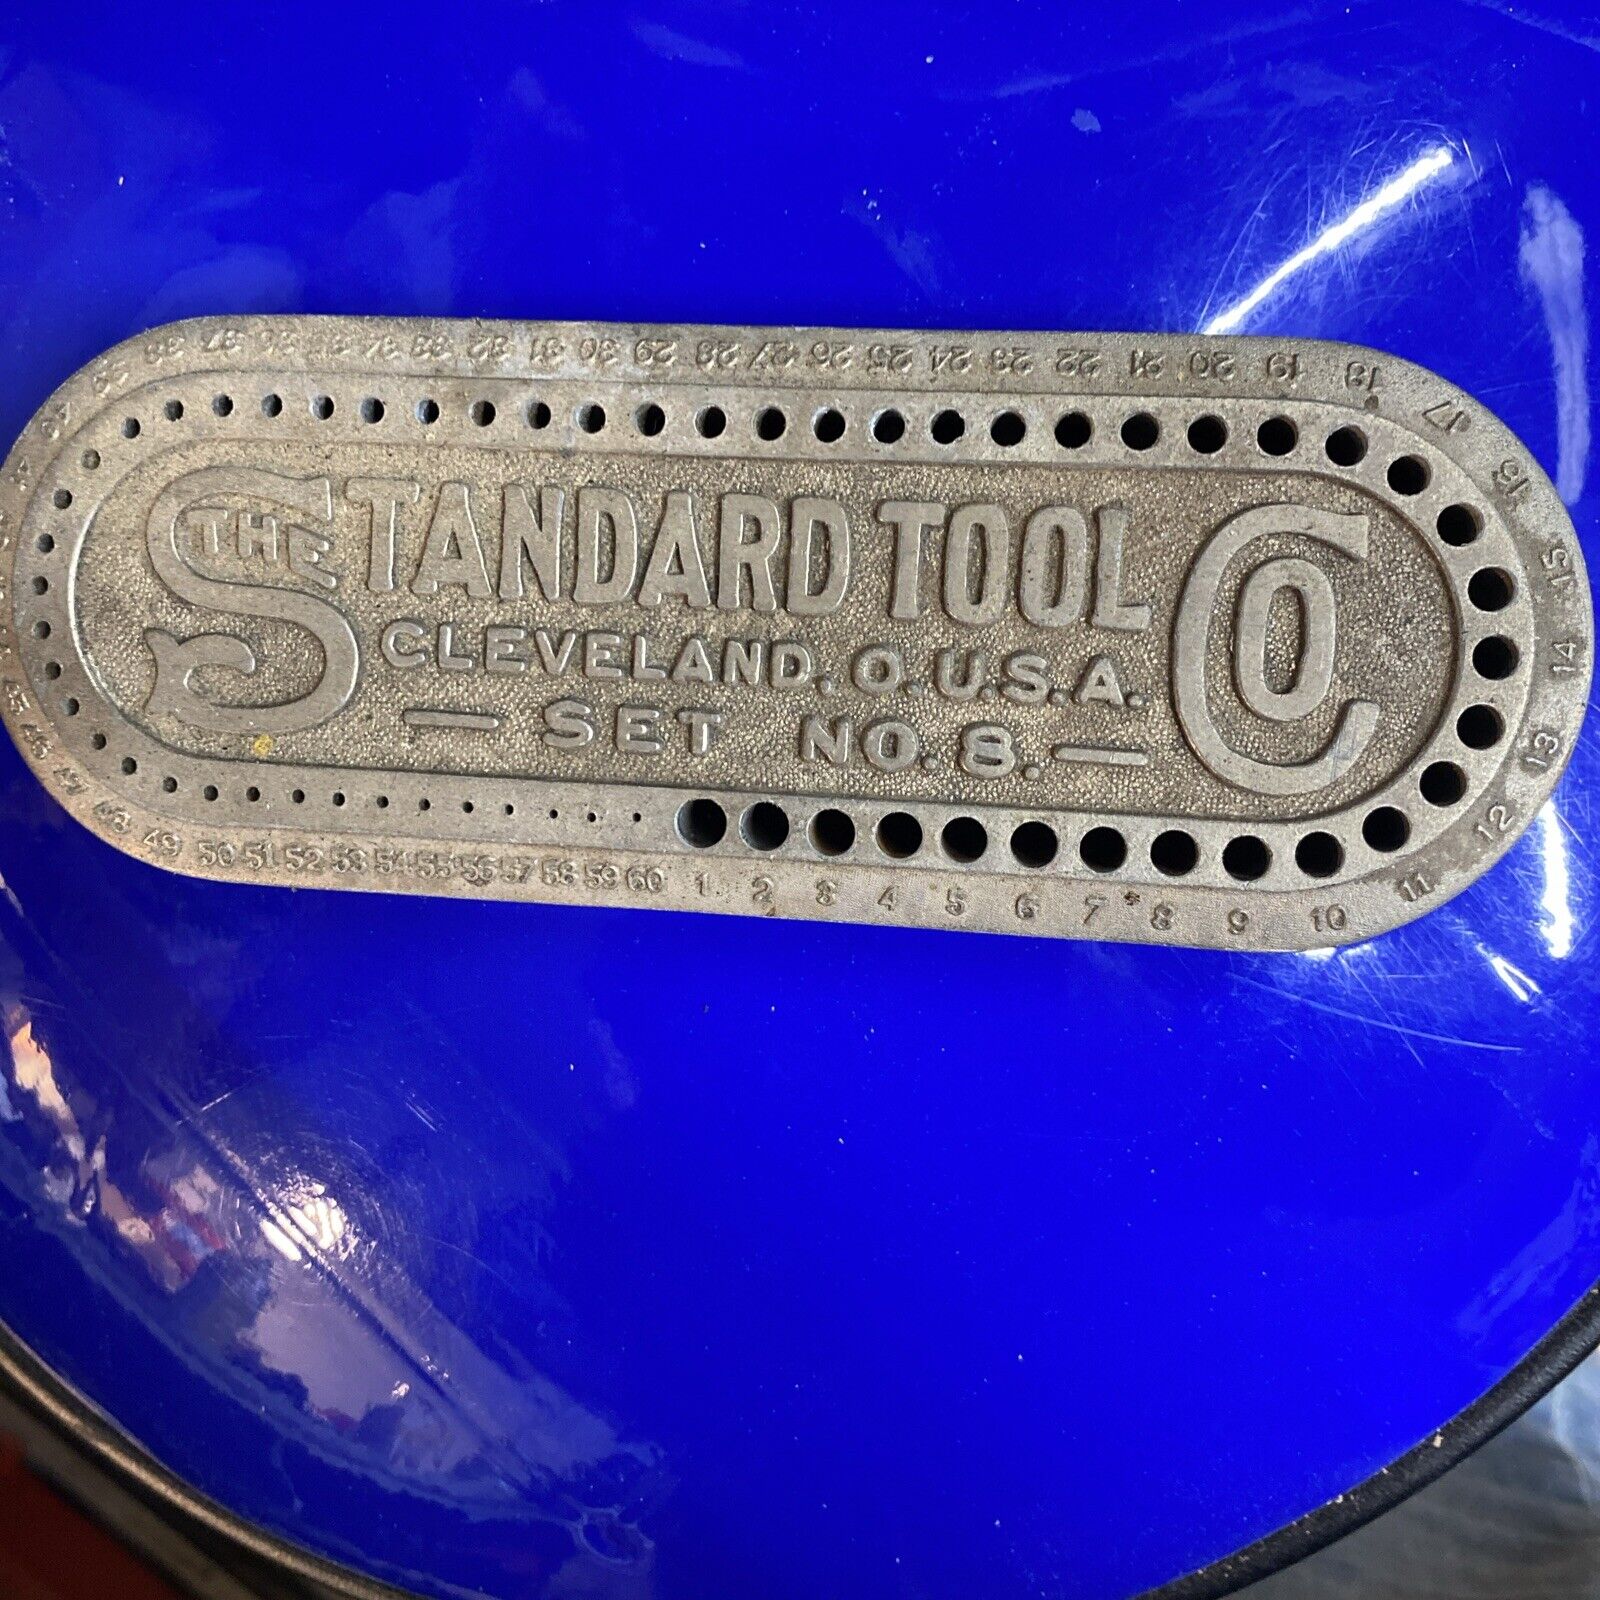 Vintage Standard Tool Co. Cleveland O USA Set No. 8 Die Cast Drill Bit Holder~N2